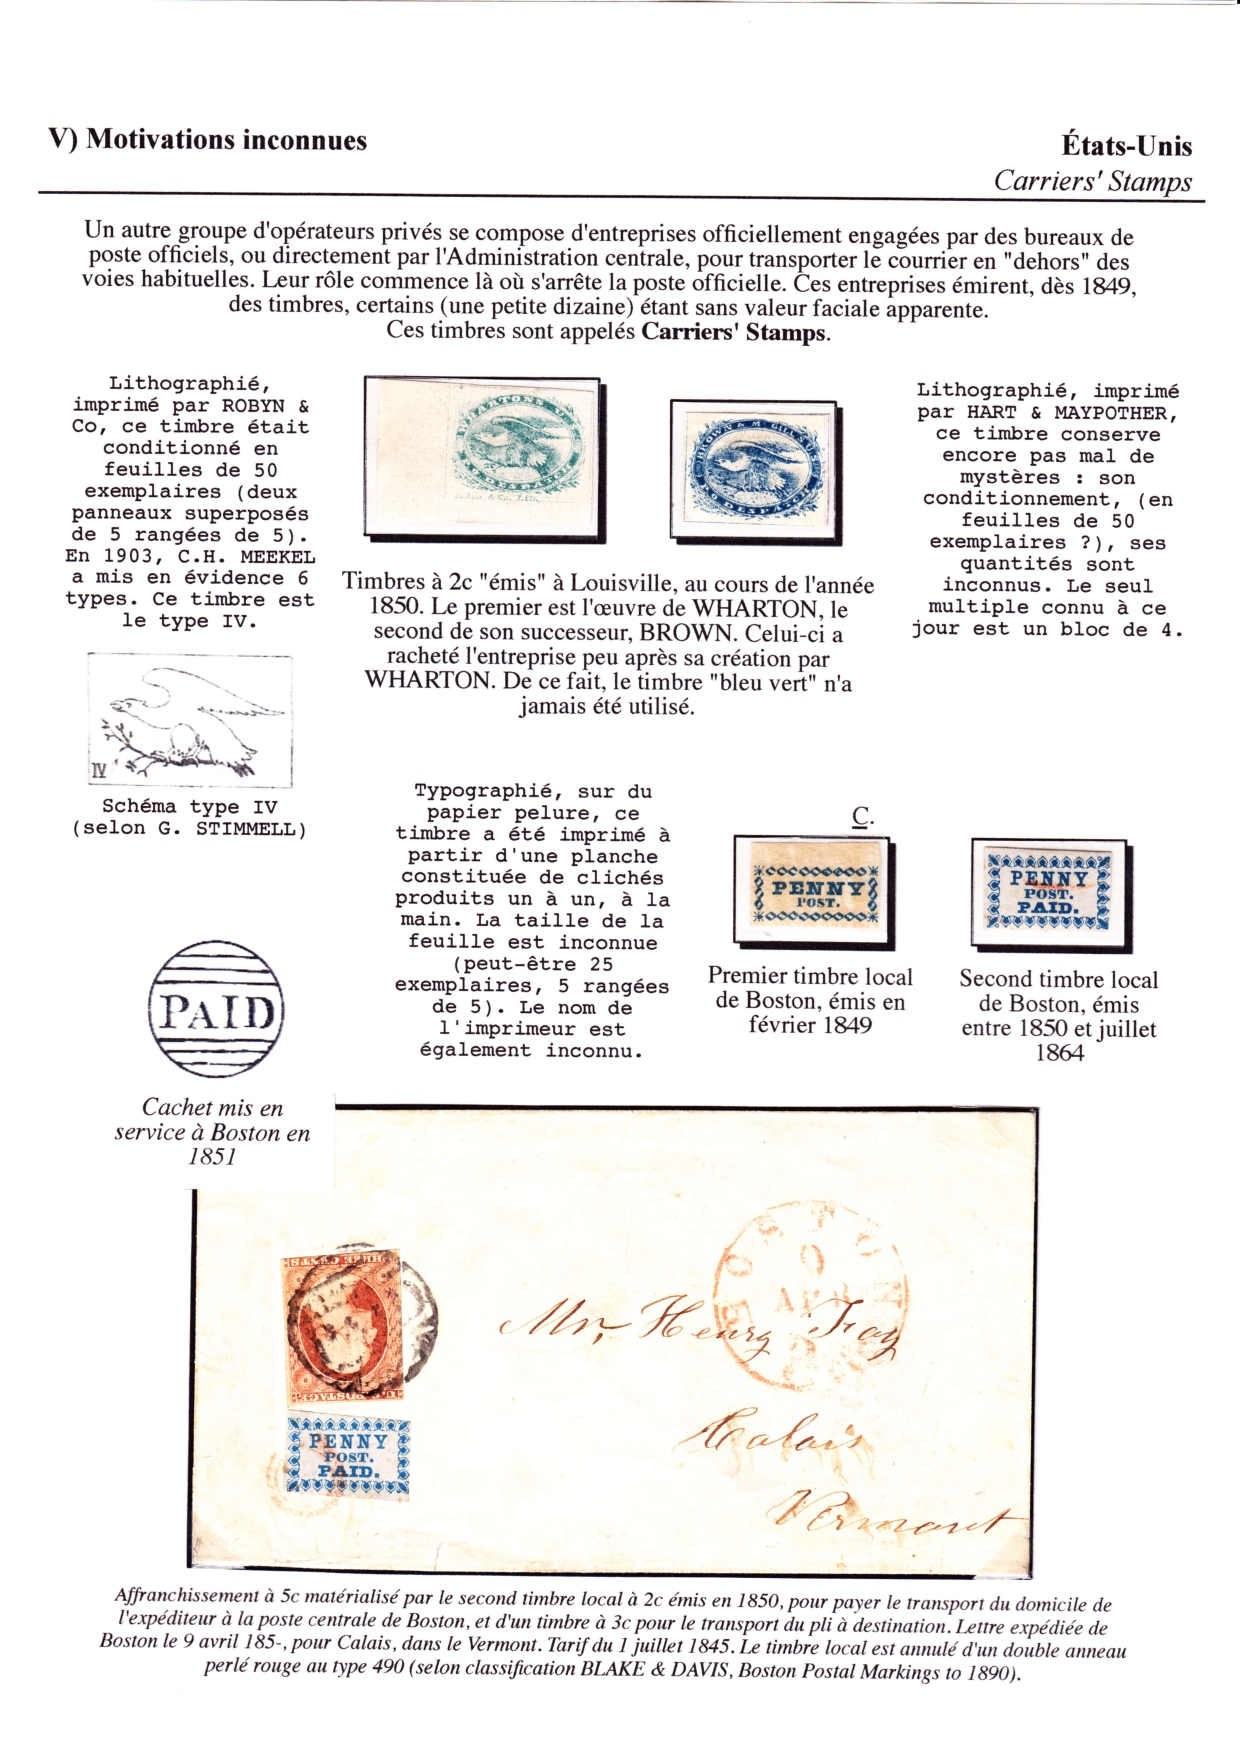 Les d��buts des timbres sans valeur faciale apparente p. 69